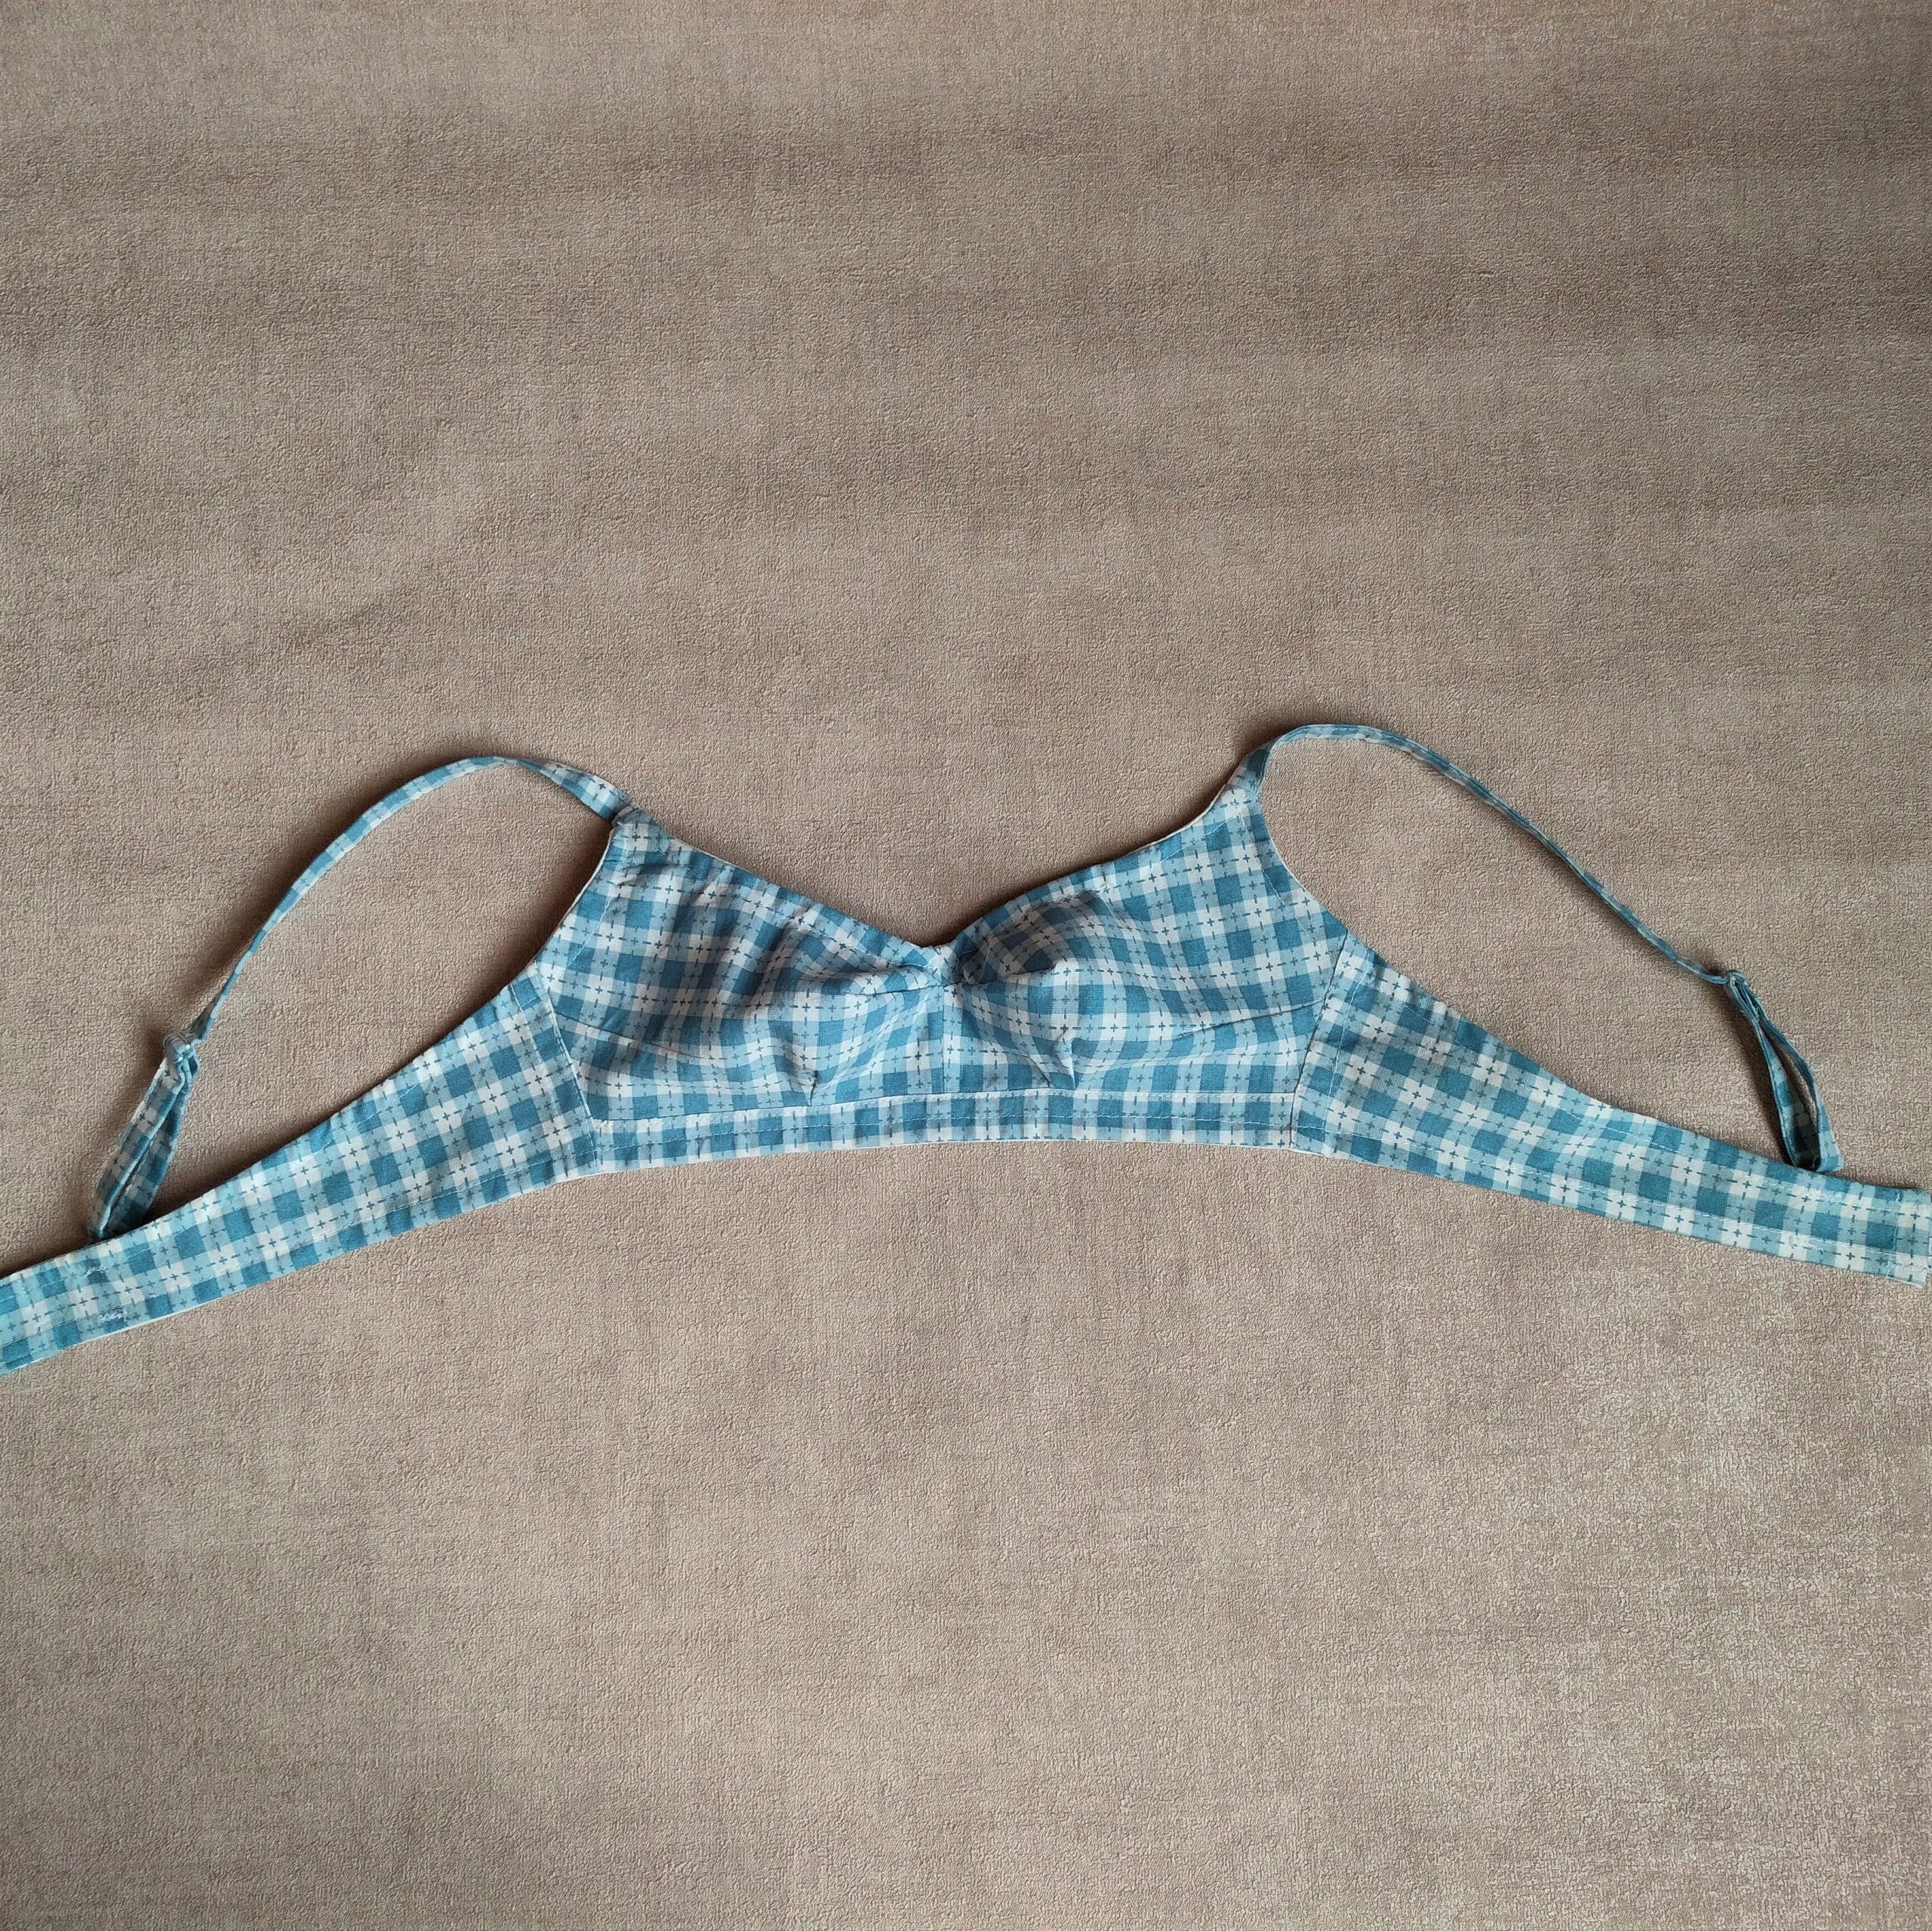 Vintage bra pattern, 1970s pattern, Viviane, Size 23-27